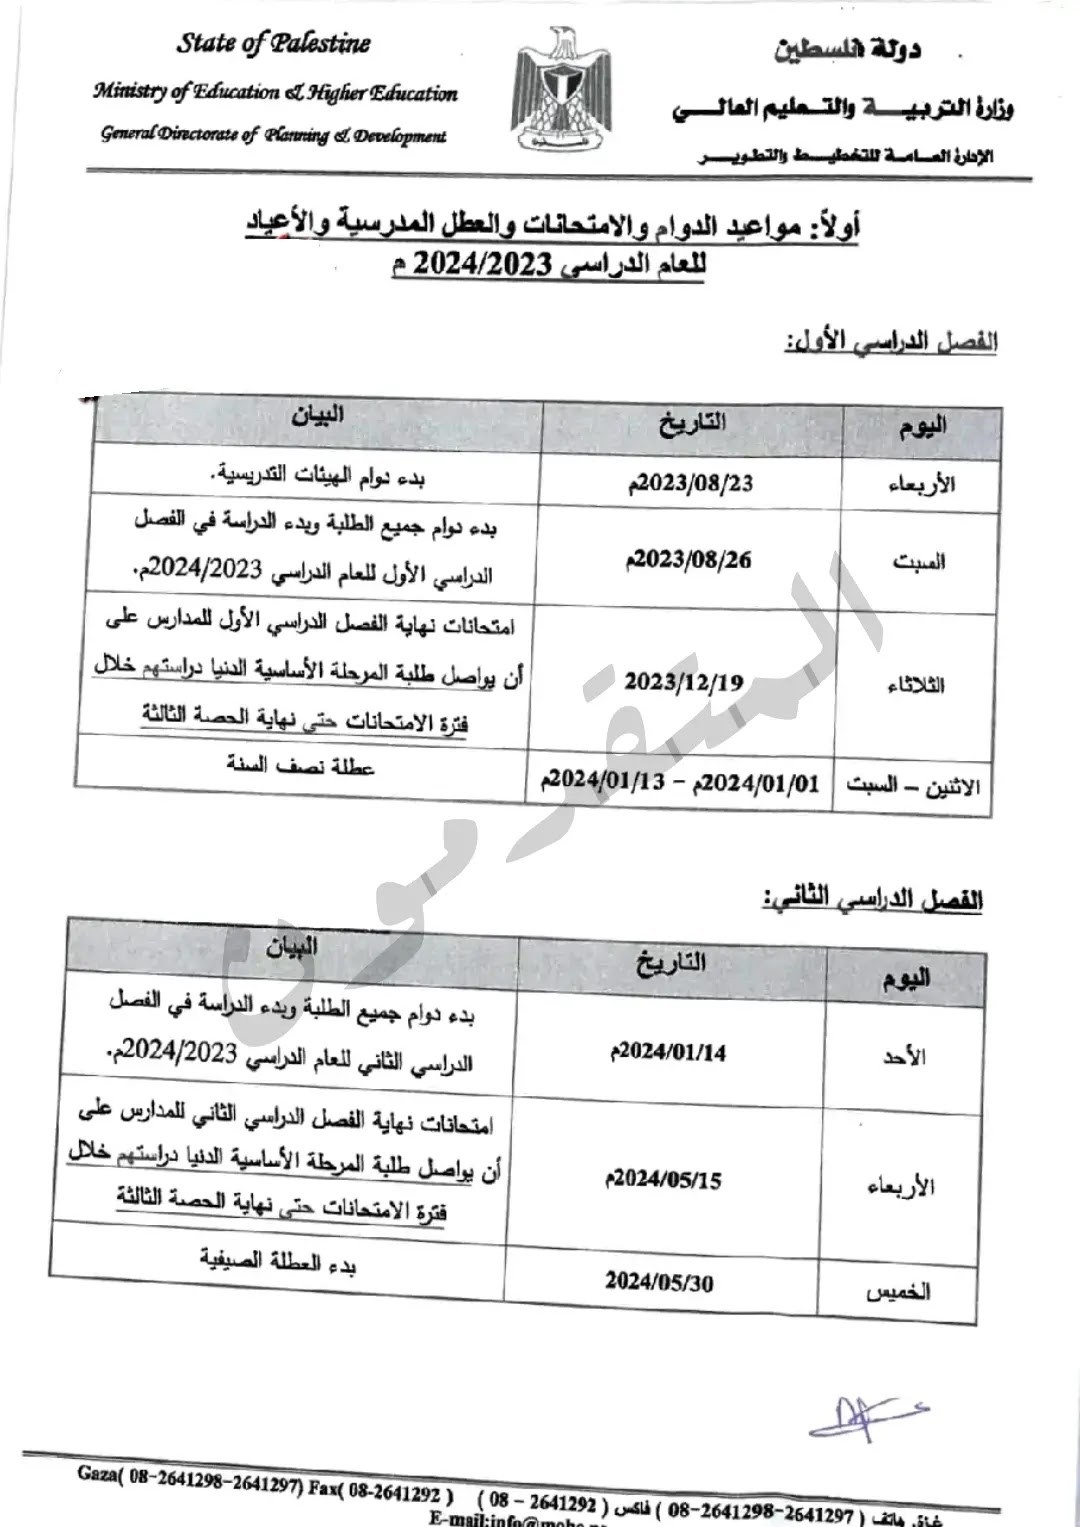 موعد بداية العام الدراسي الجديد 2023-2024 والعطل والاختبارات في فلسطين.jpg